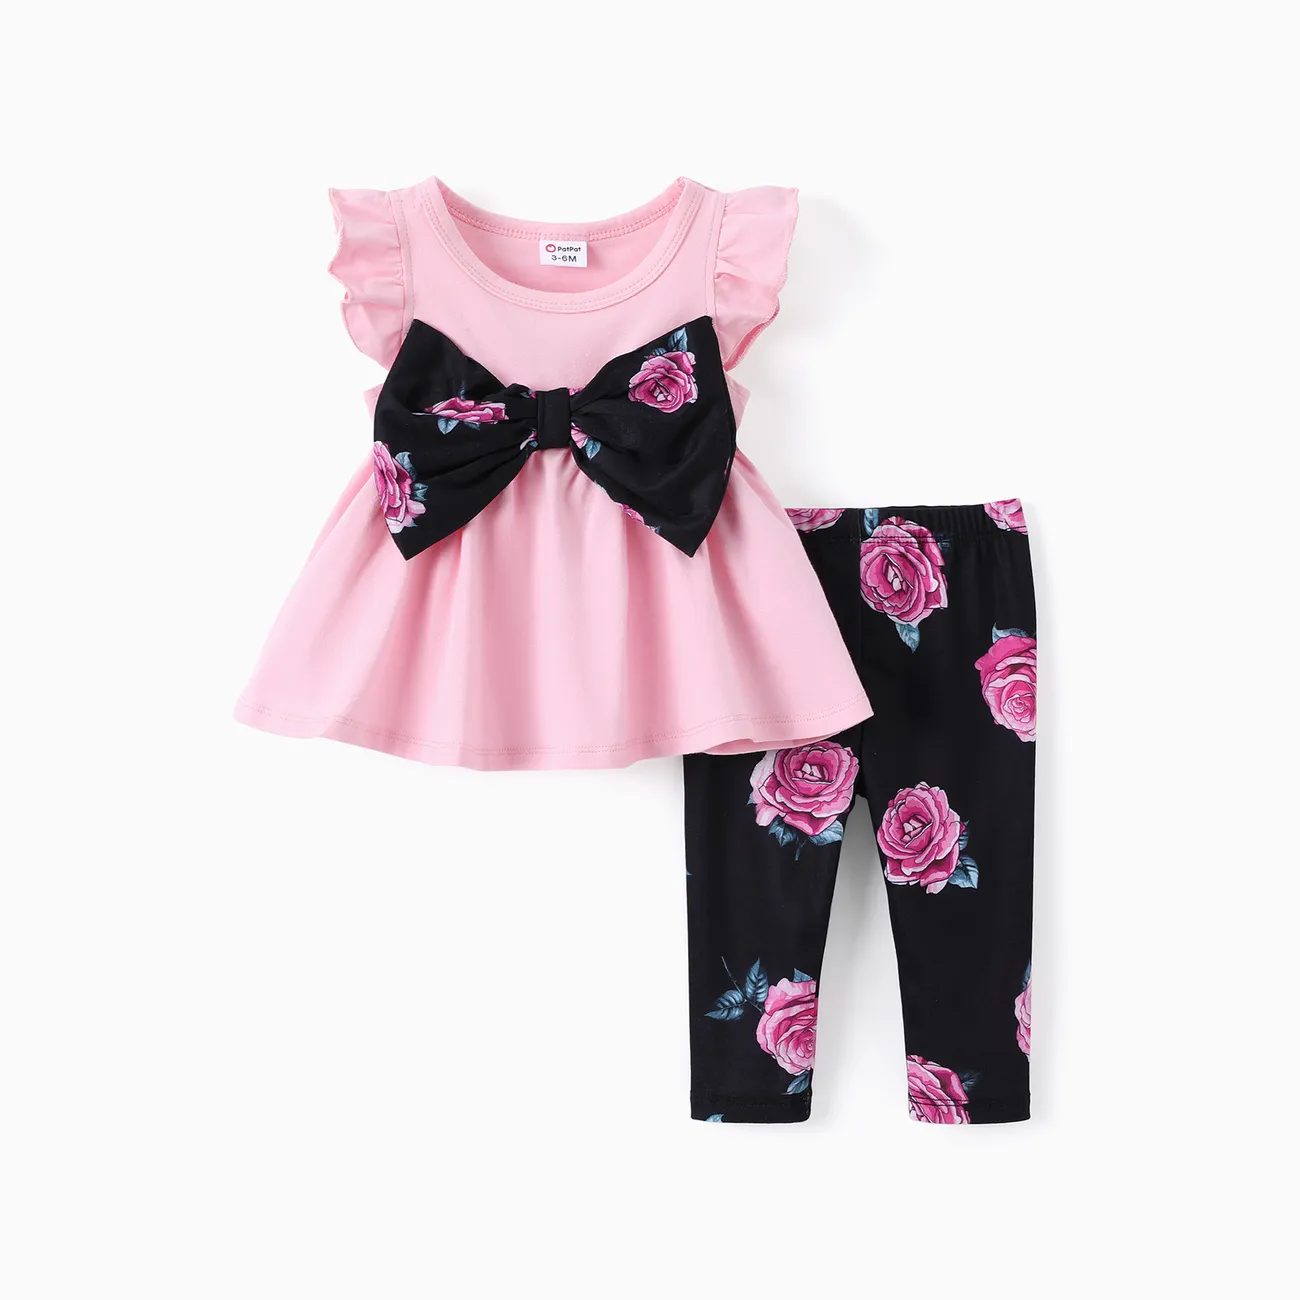 Bébé/enfant en bas âge fille 2pcs Sweet Bowknot Flutter-sleeve Top et Floral Imprimé Leggings Set Rose big image 1